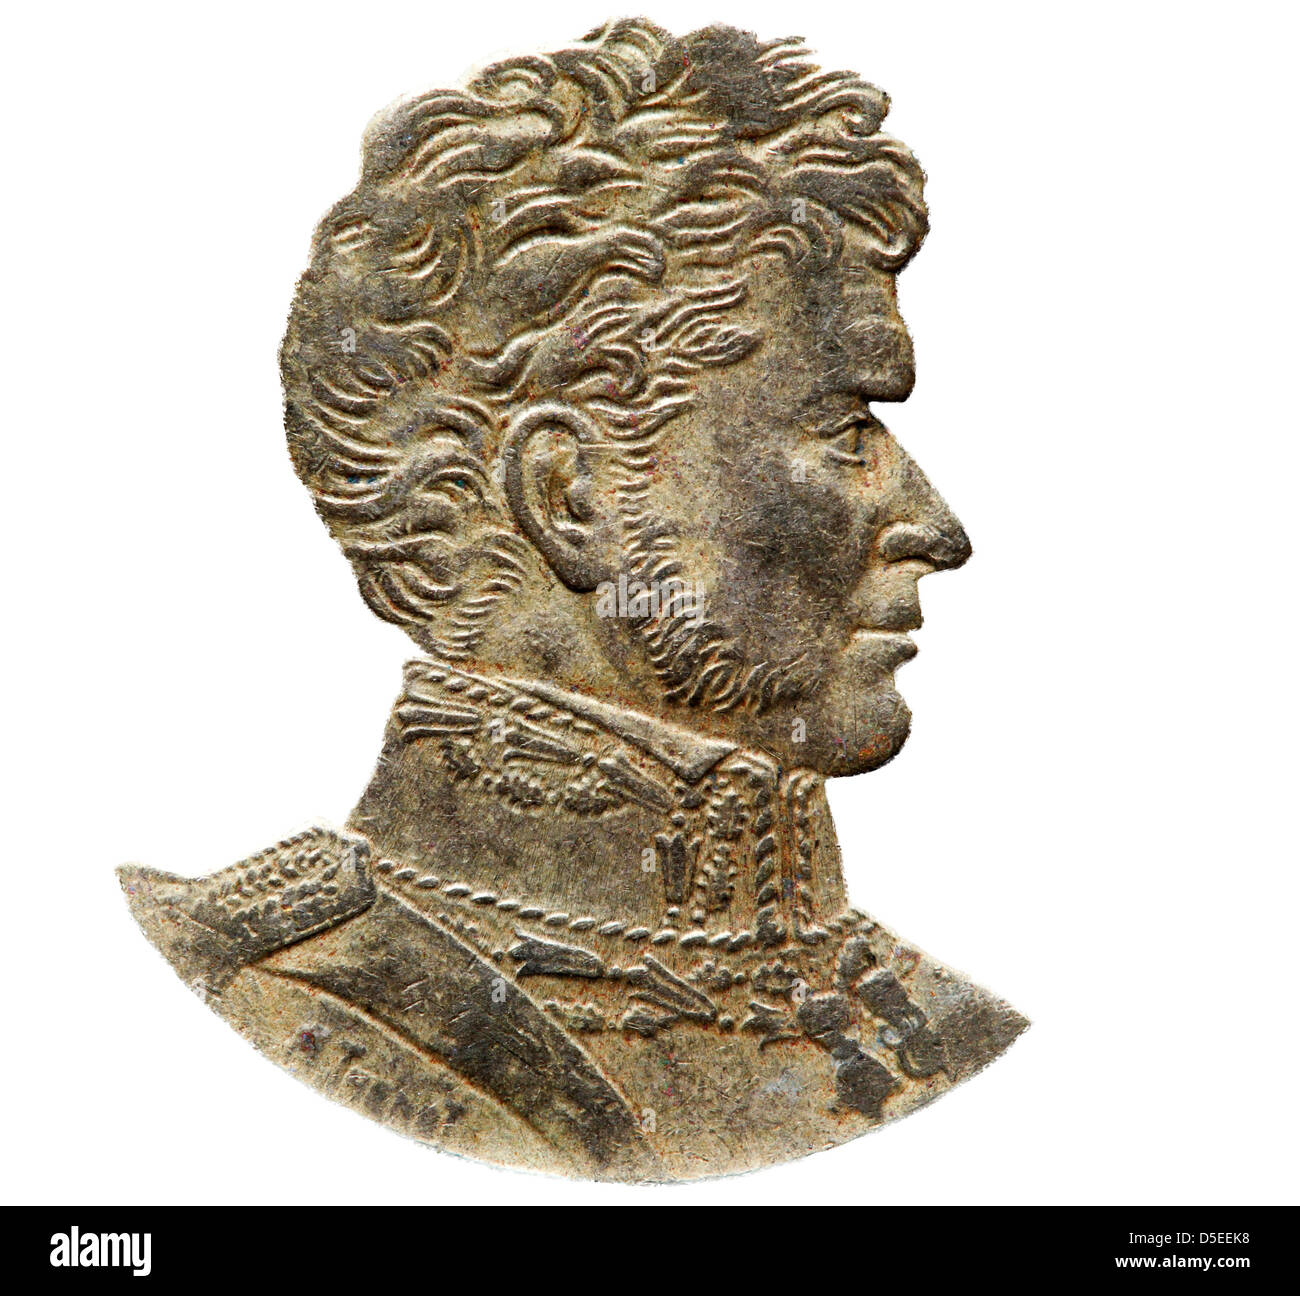 Portrait of Bernardo O'Higgins from 10 pesos coin, Chile, 1994 Stock Photo